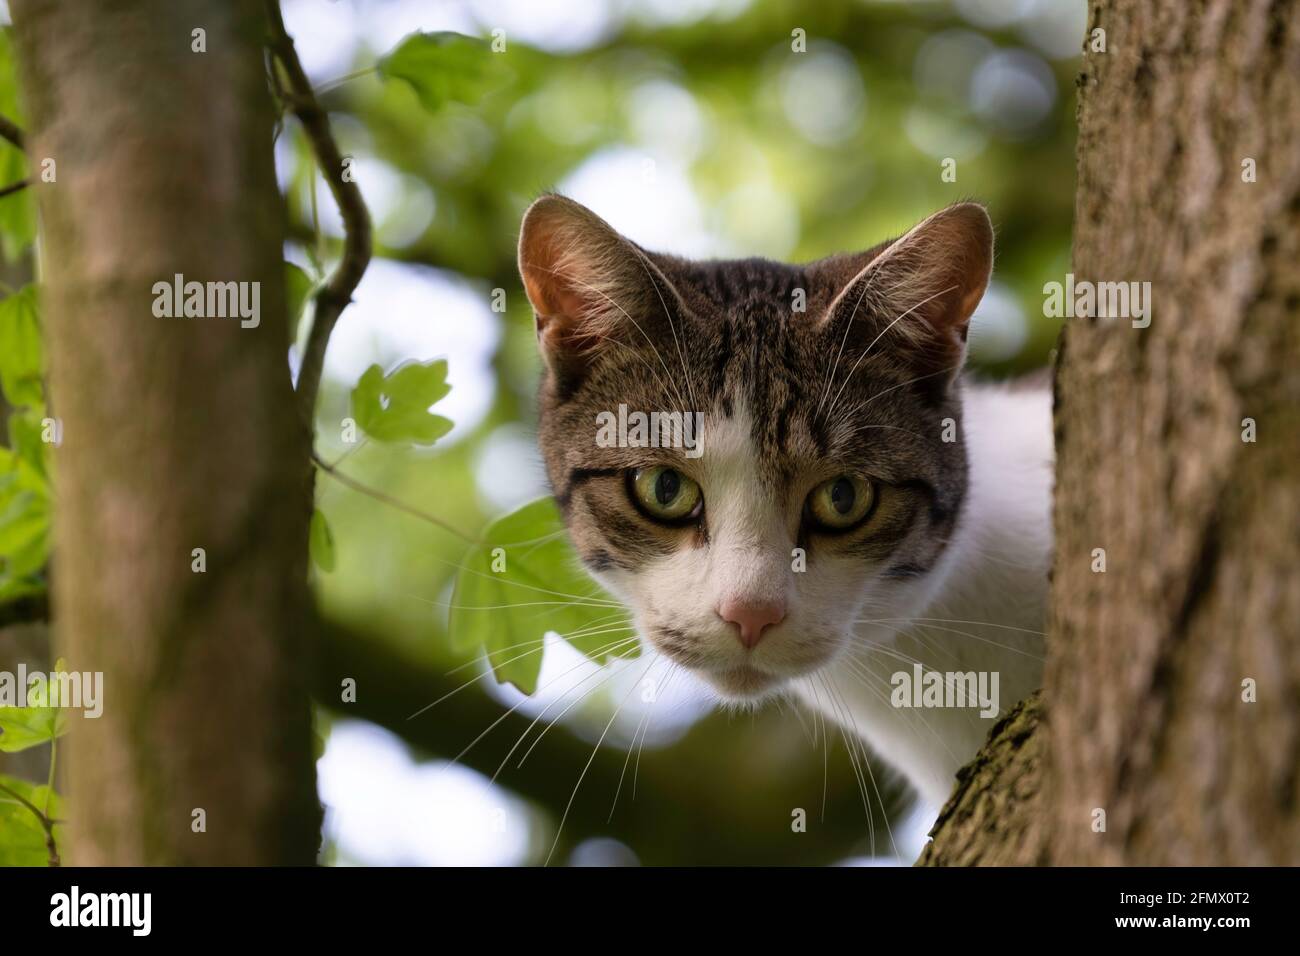 Katze sitzt im Baum zwischen dem Laub auf einem dicken Ast und starrt mit einem fesselnden Blick auf die Kamera. Konzentrieren Sie sich auf den Kopf und die Schnurrhaare des Tieres Stockfoto